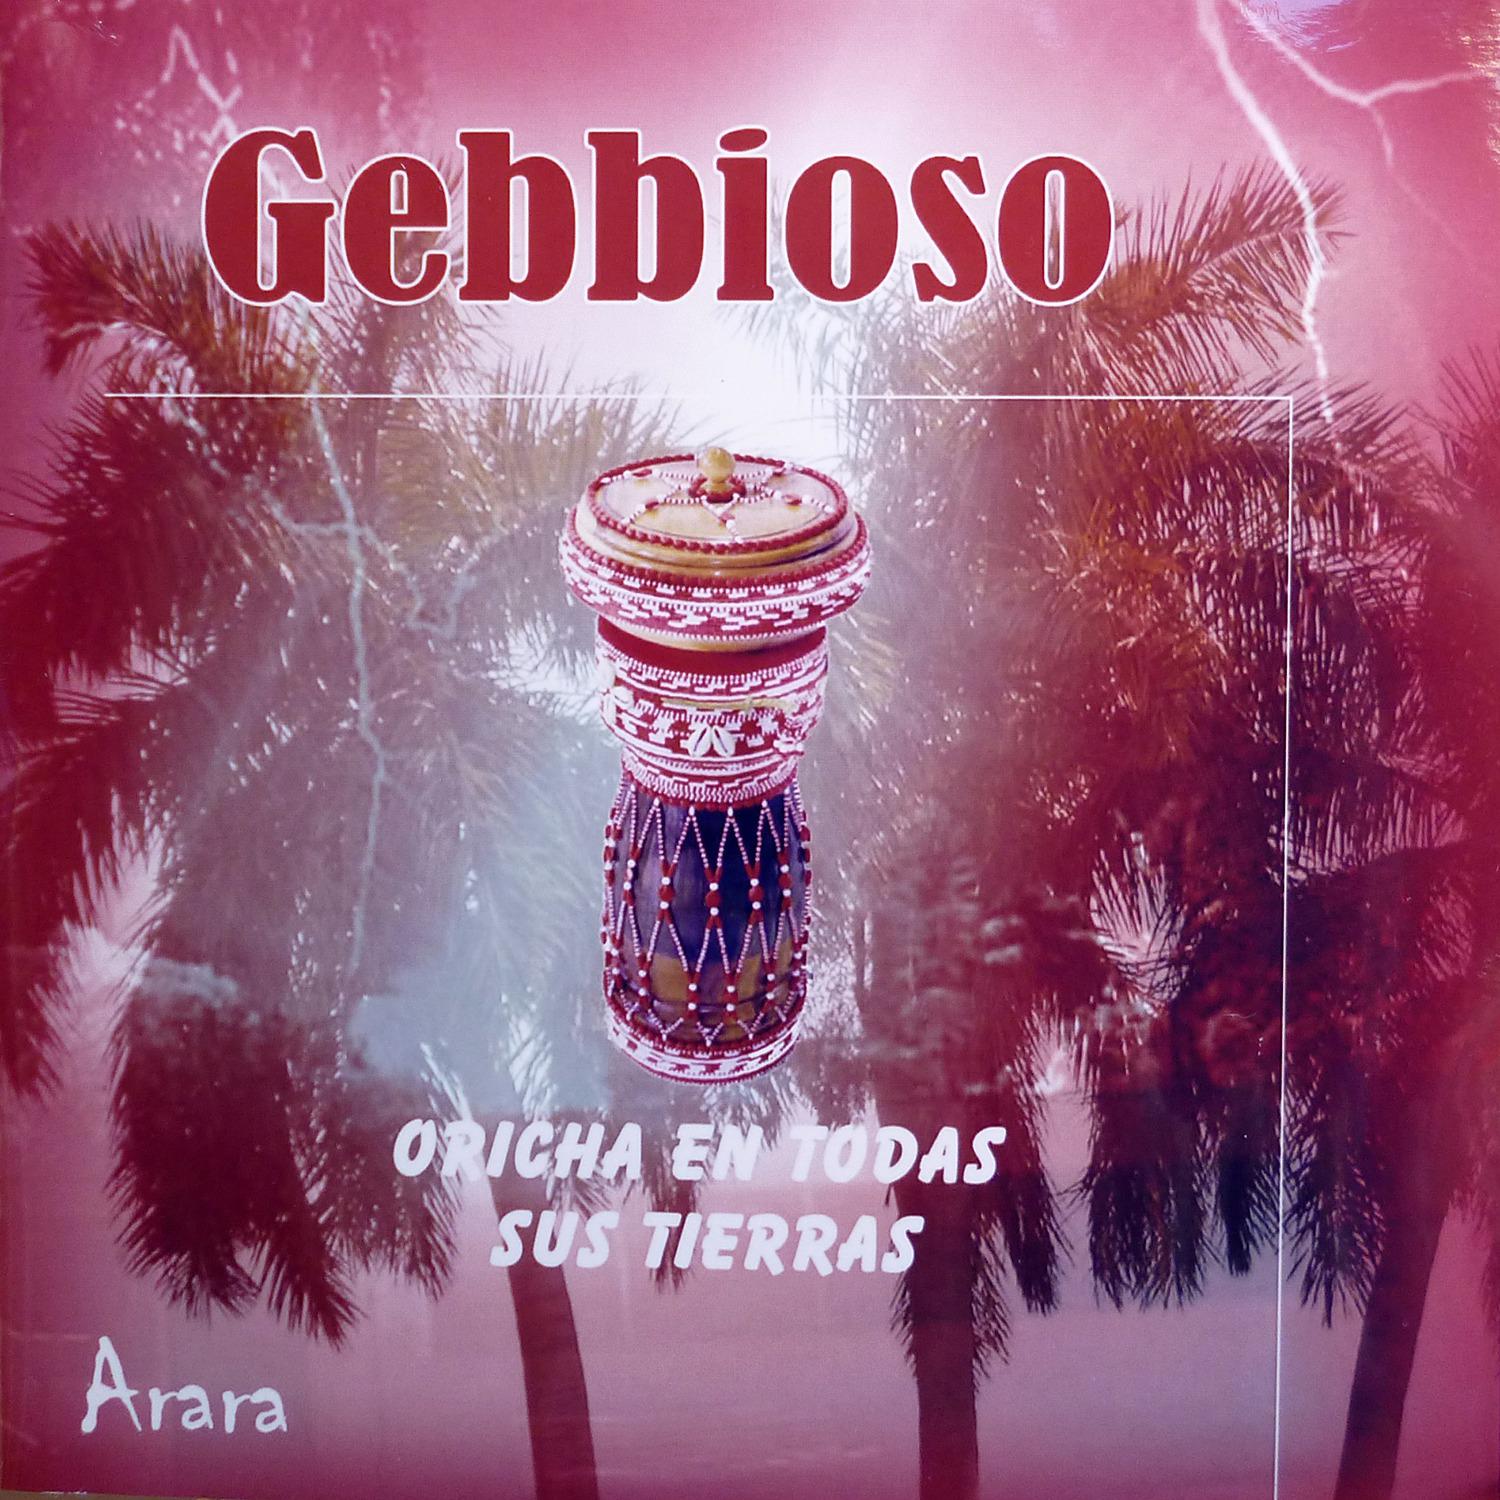 Постер альбома Gebbioso (Oricha en todas sus tierras)